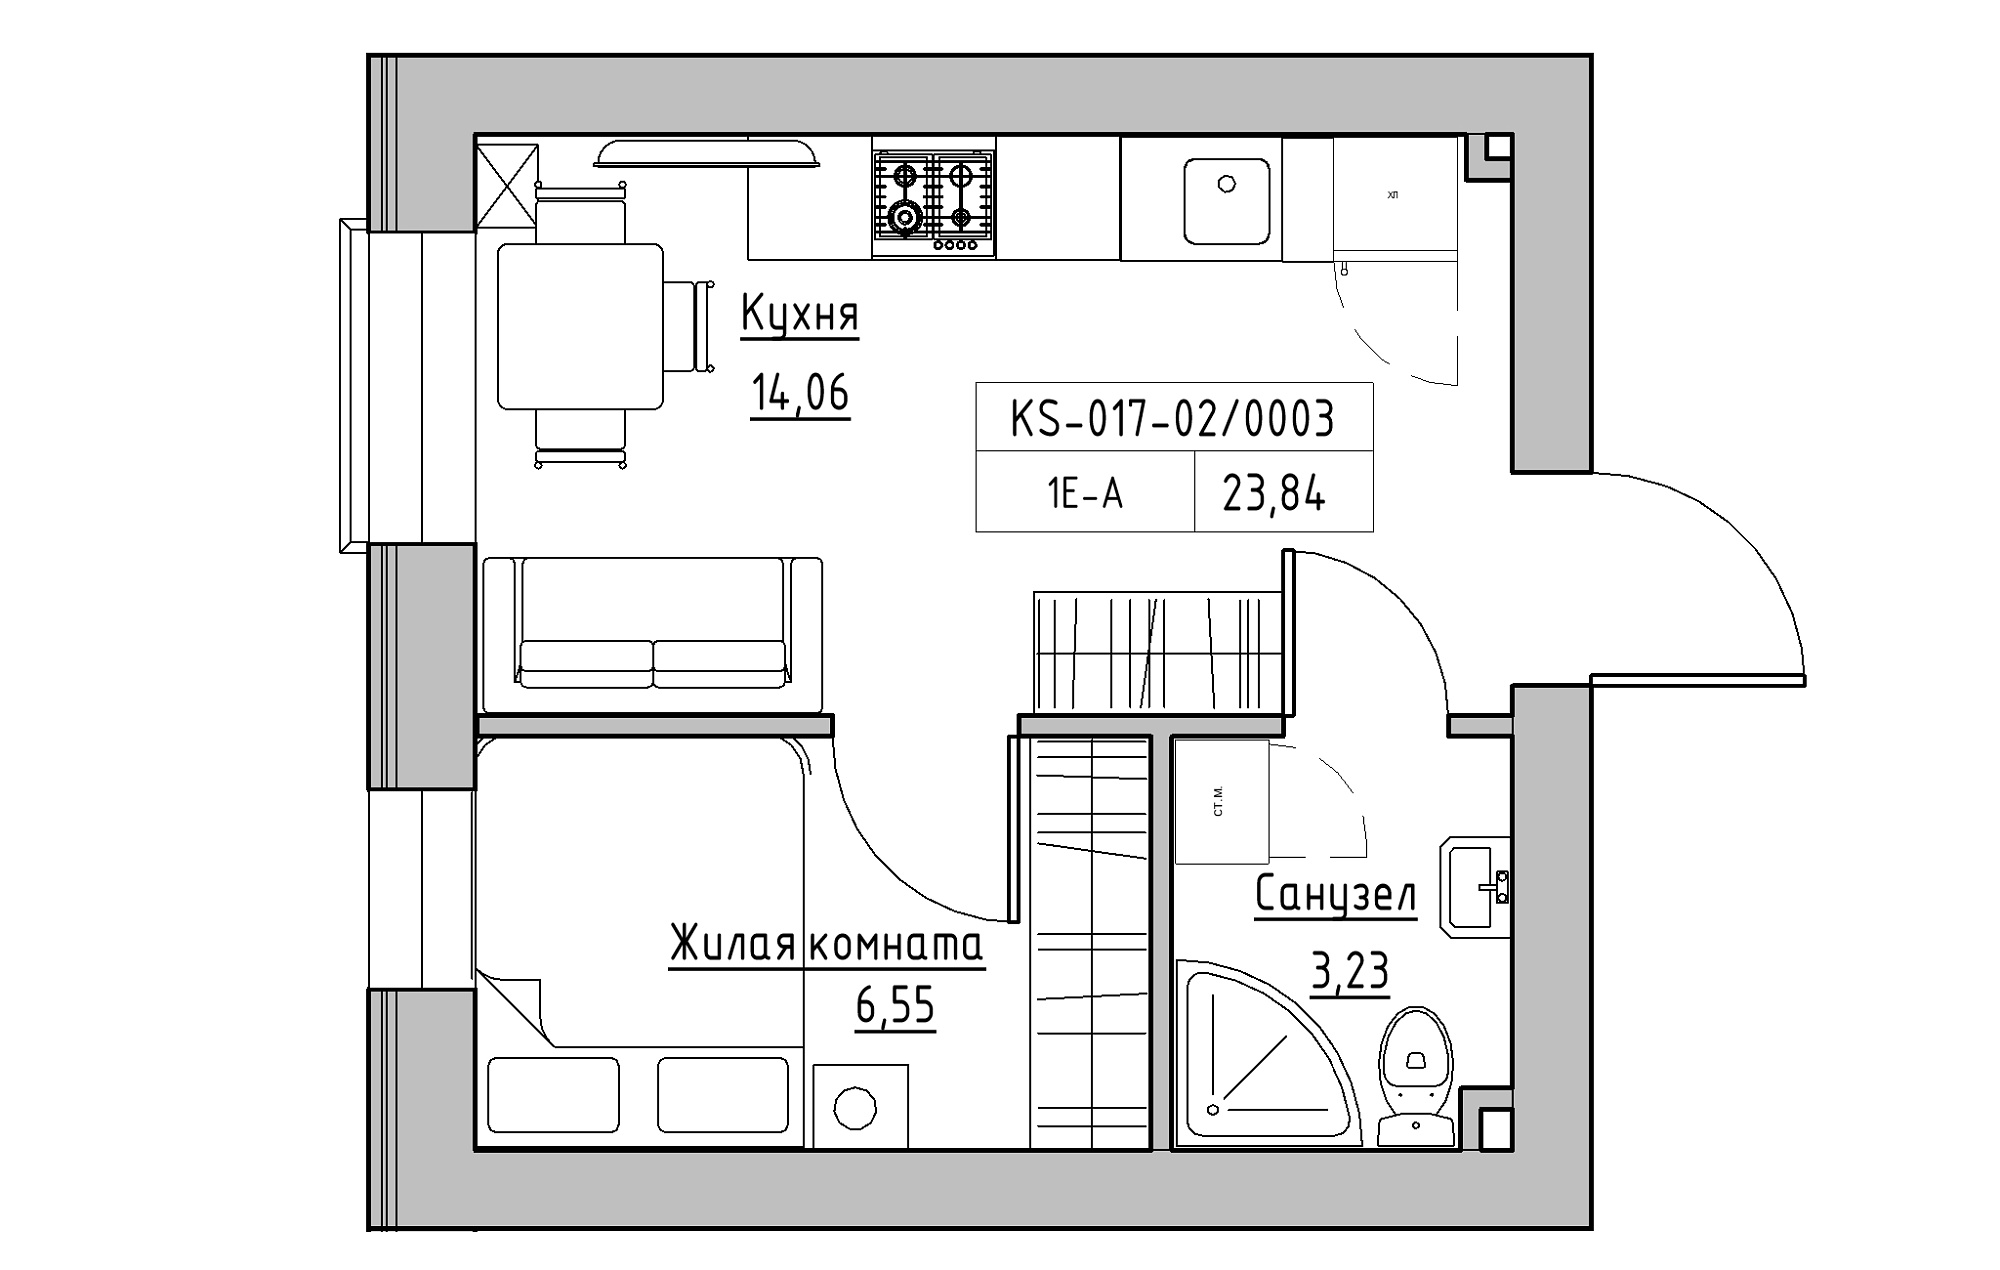 Планування 1-к квартира площею 23.84м2, KS-017-02/0003.